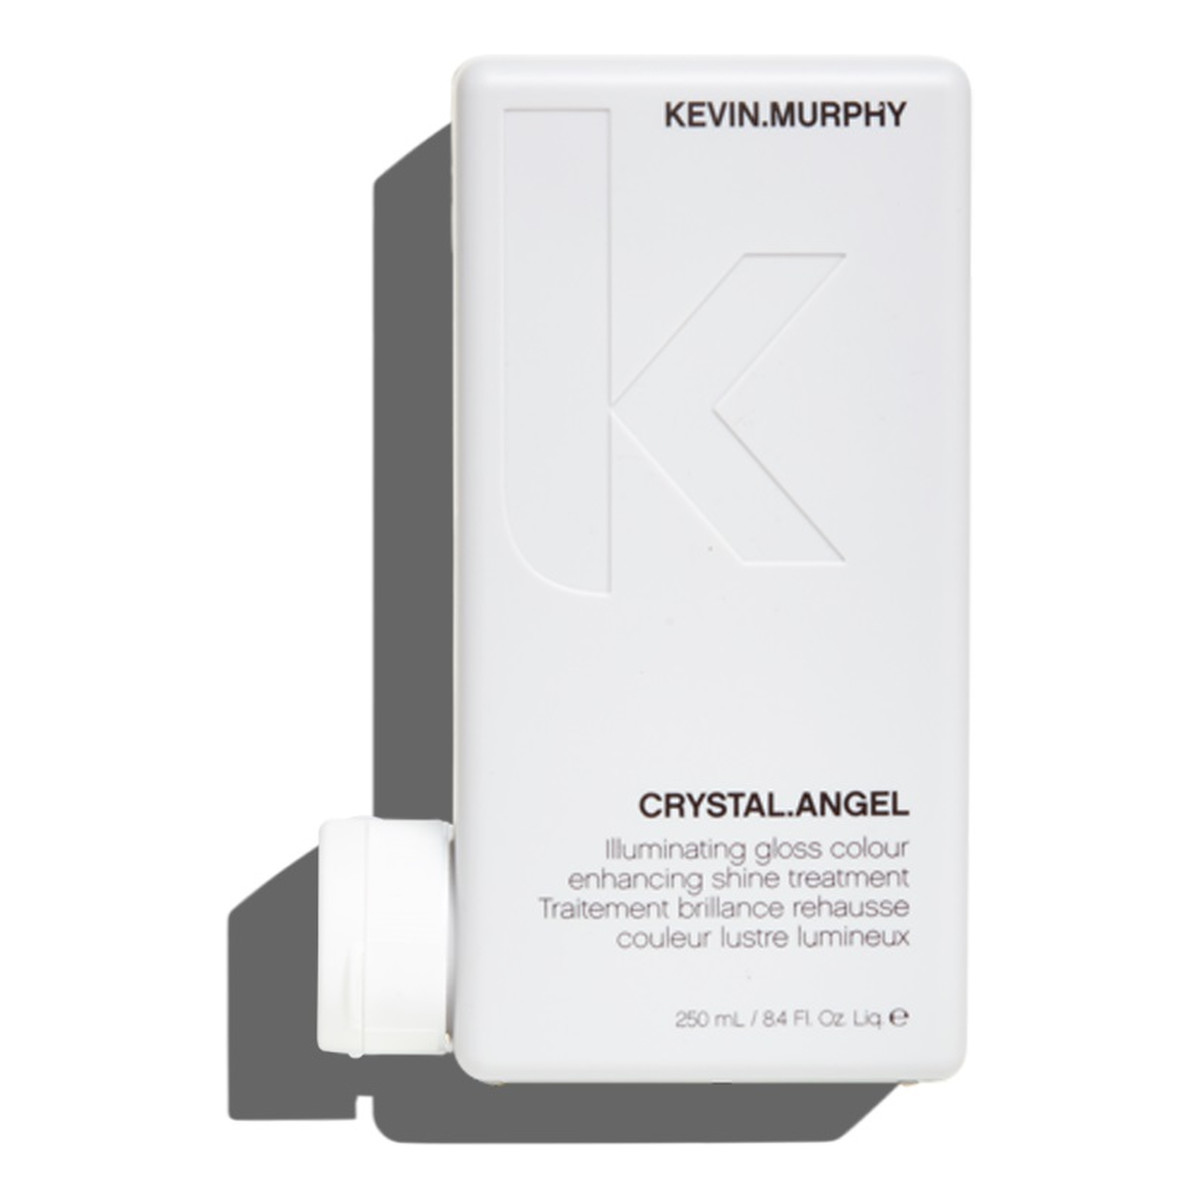 Kevin Murphy Crystal.Angel Illuminating Gloss Colour kuracja nadająca włosom świetlisty połysk 250ml